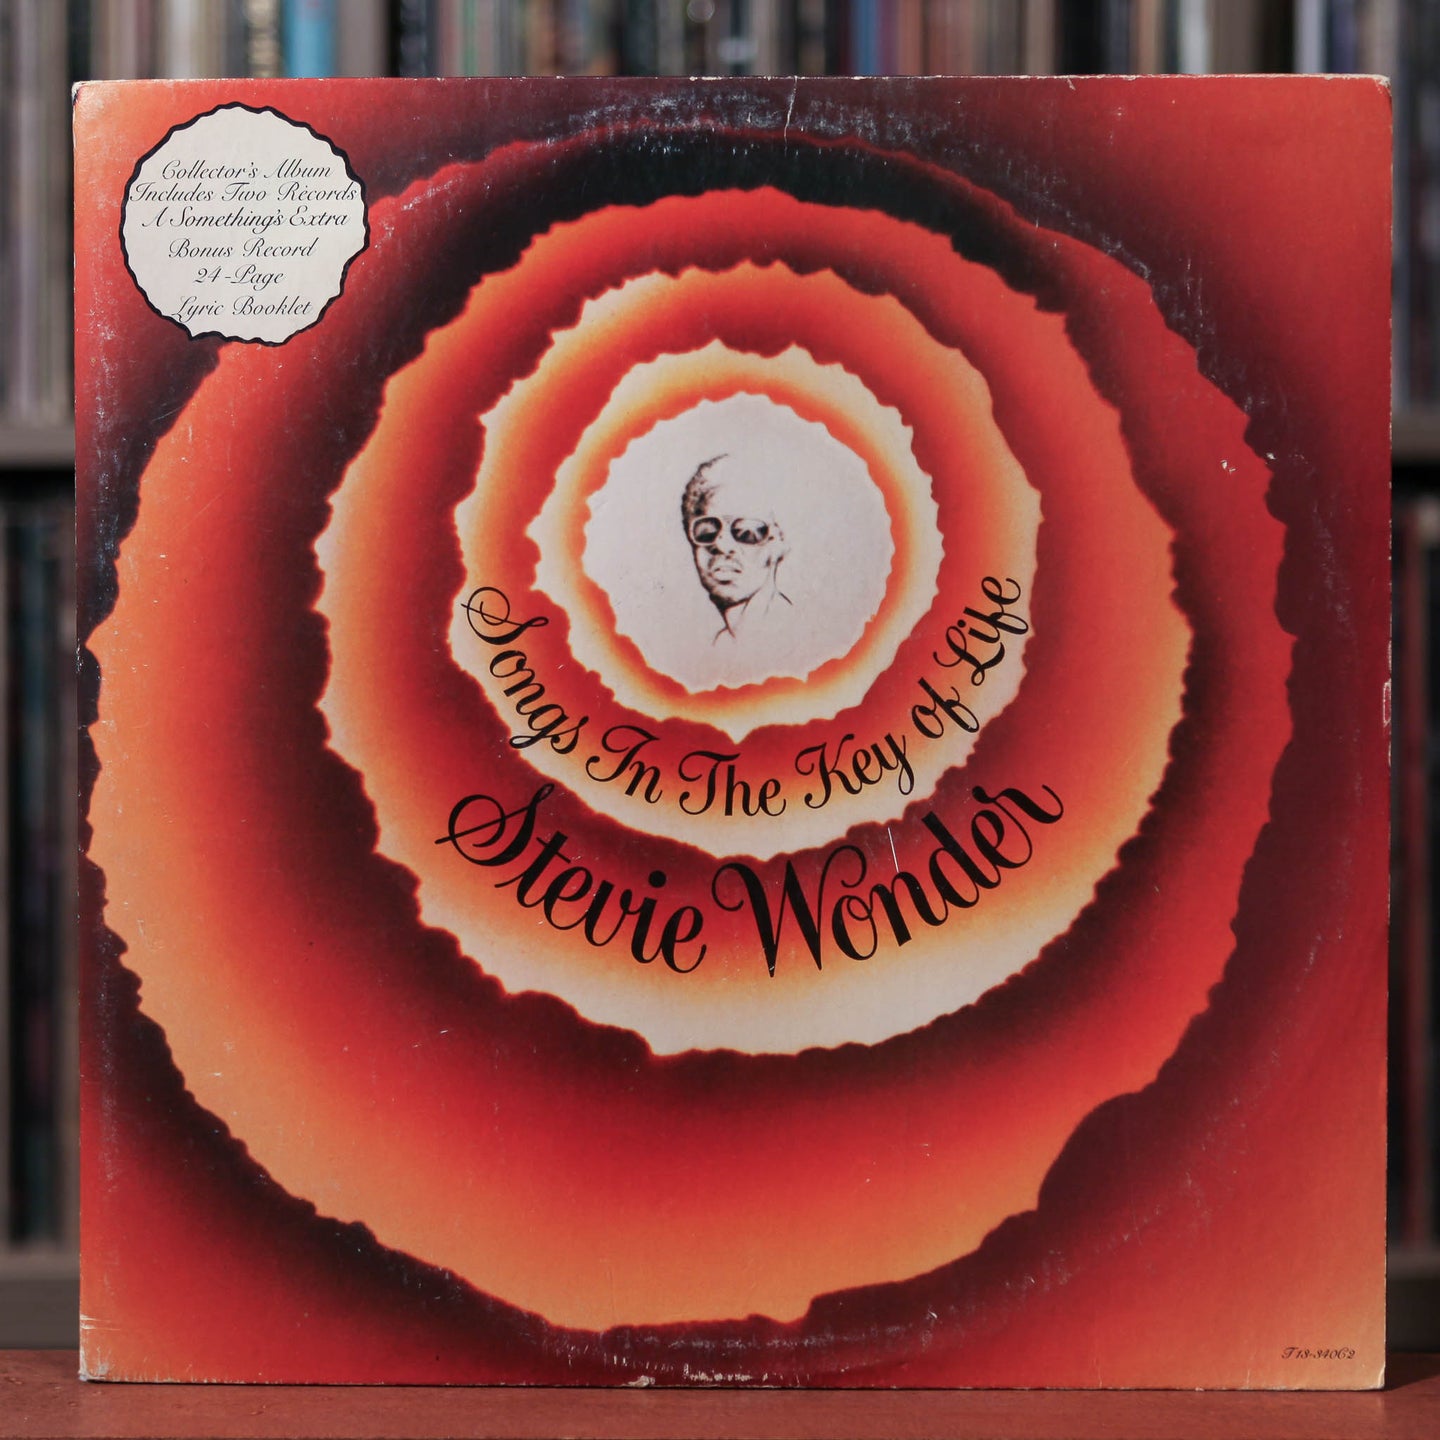 Stevie Wonder - Songs In The Key Of Life - 2LP - 1976 Tamla, VG/VG w/Booklet